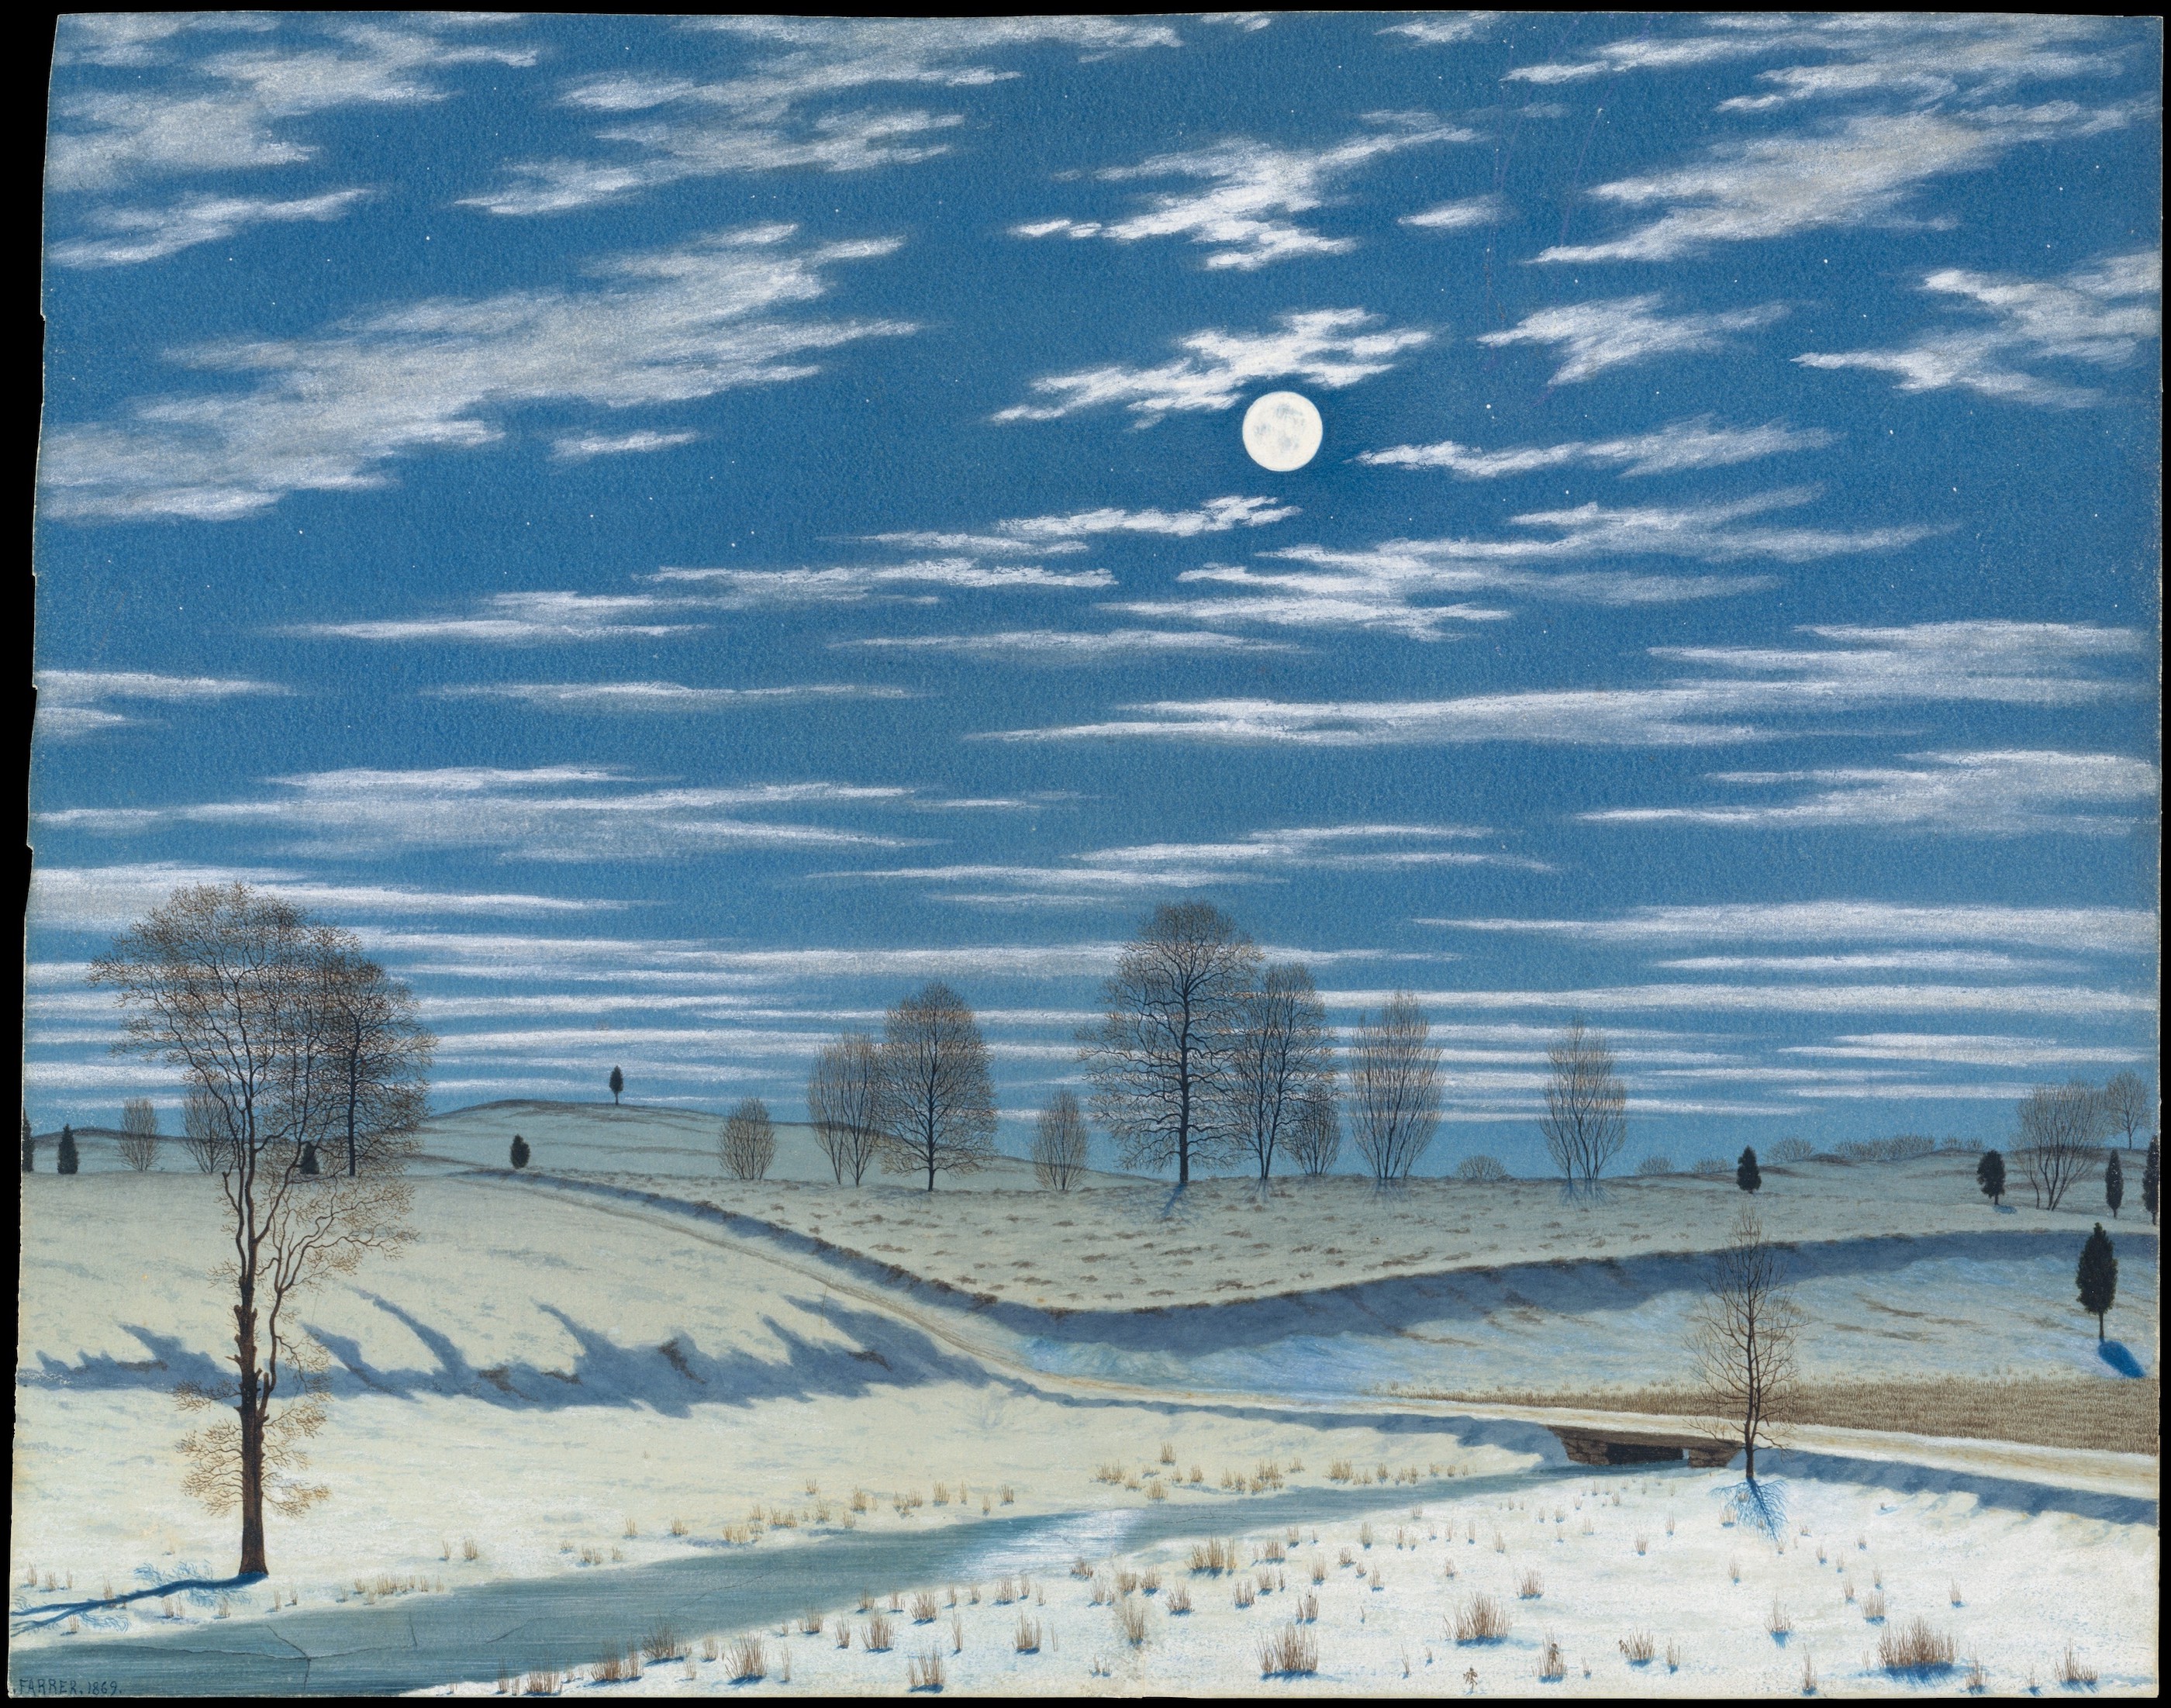 月明かりの冬景色 by Henry Farrer - 1869年 - 30.2 x 38.6 cm 